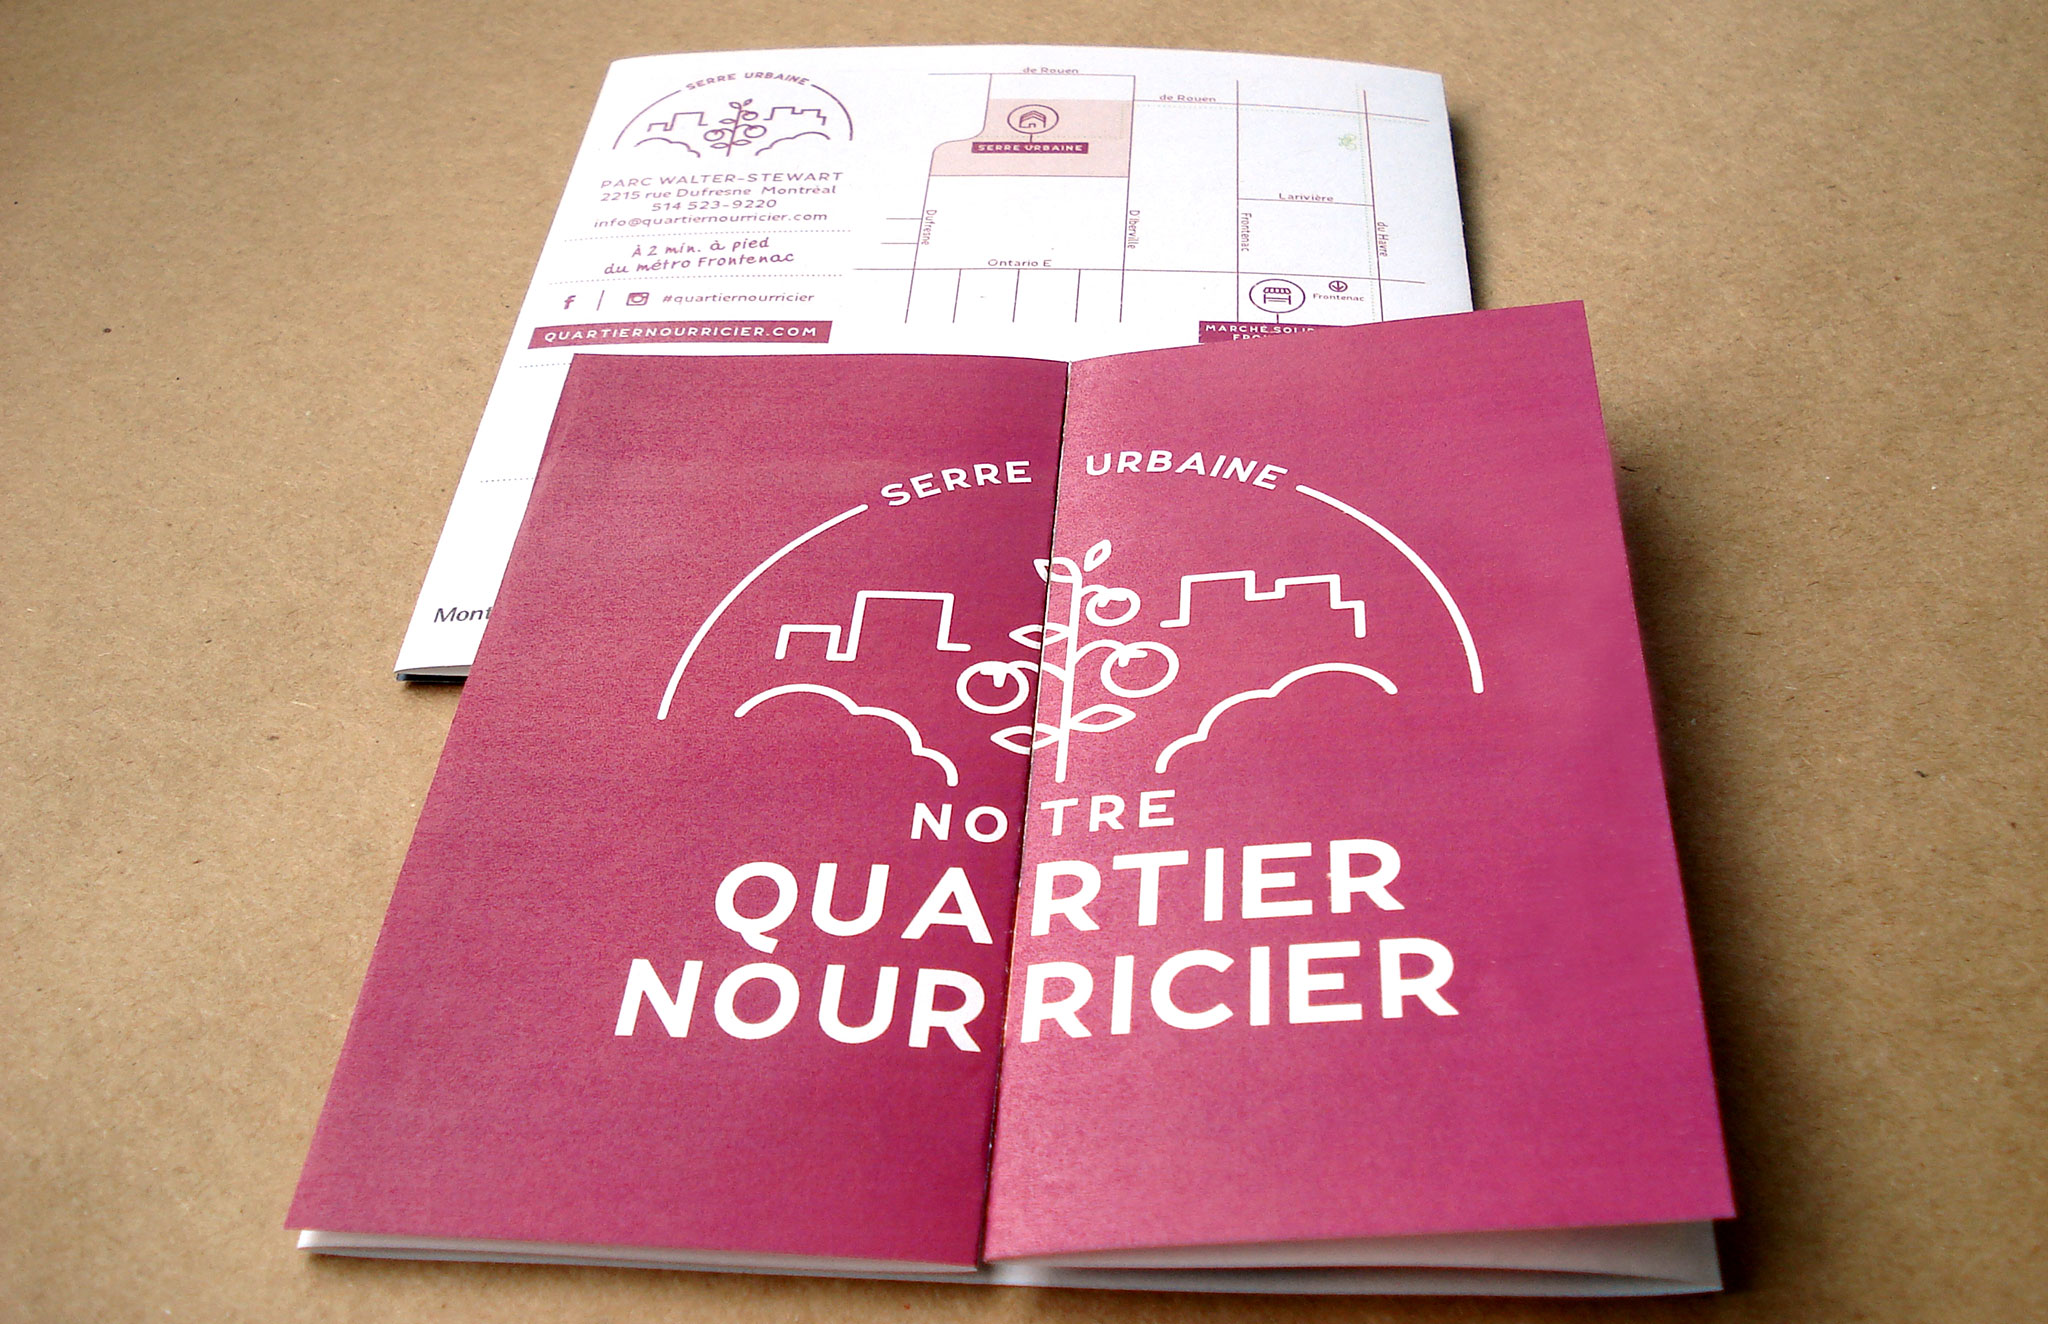 Rafraîchissement logo et ligne graphique Quartier Nourricier. Emballage et outils de promotion.